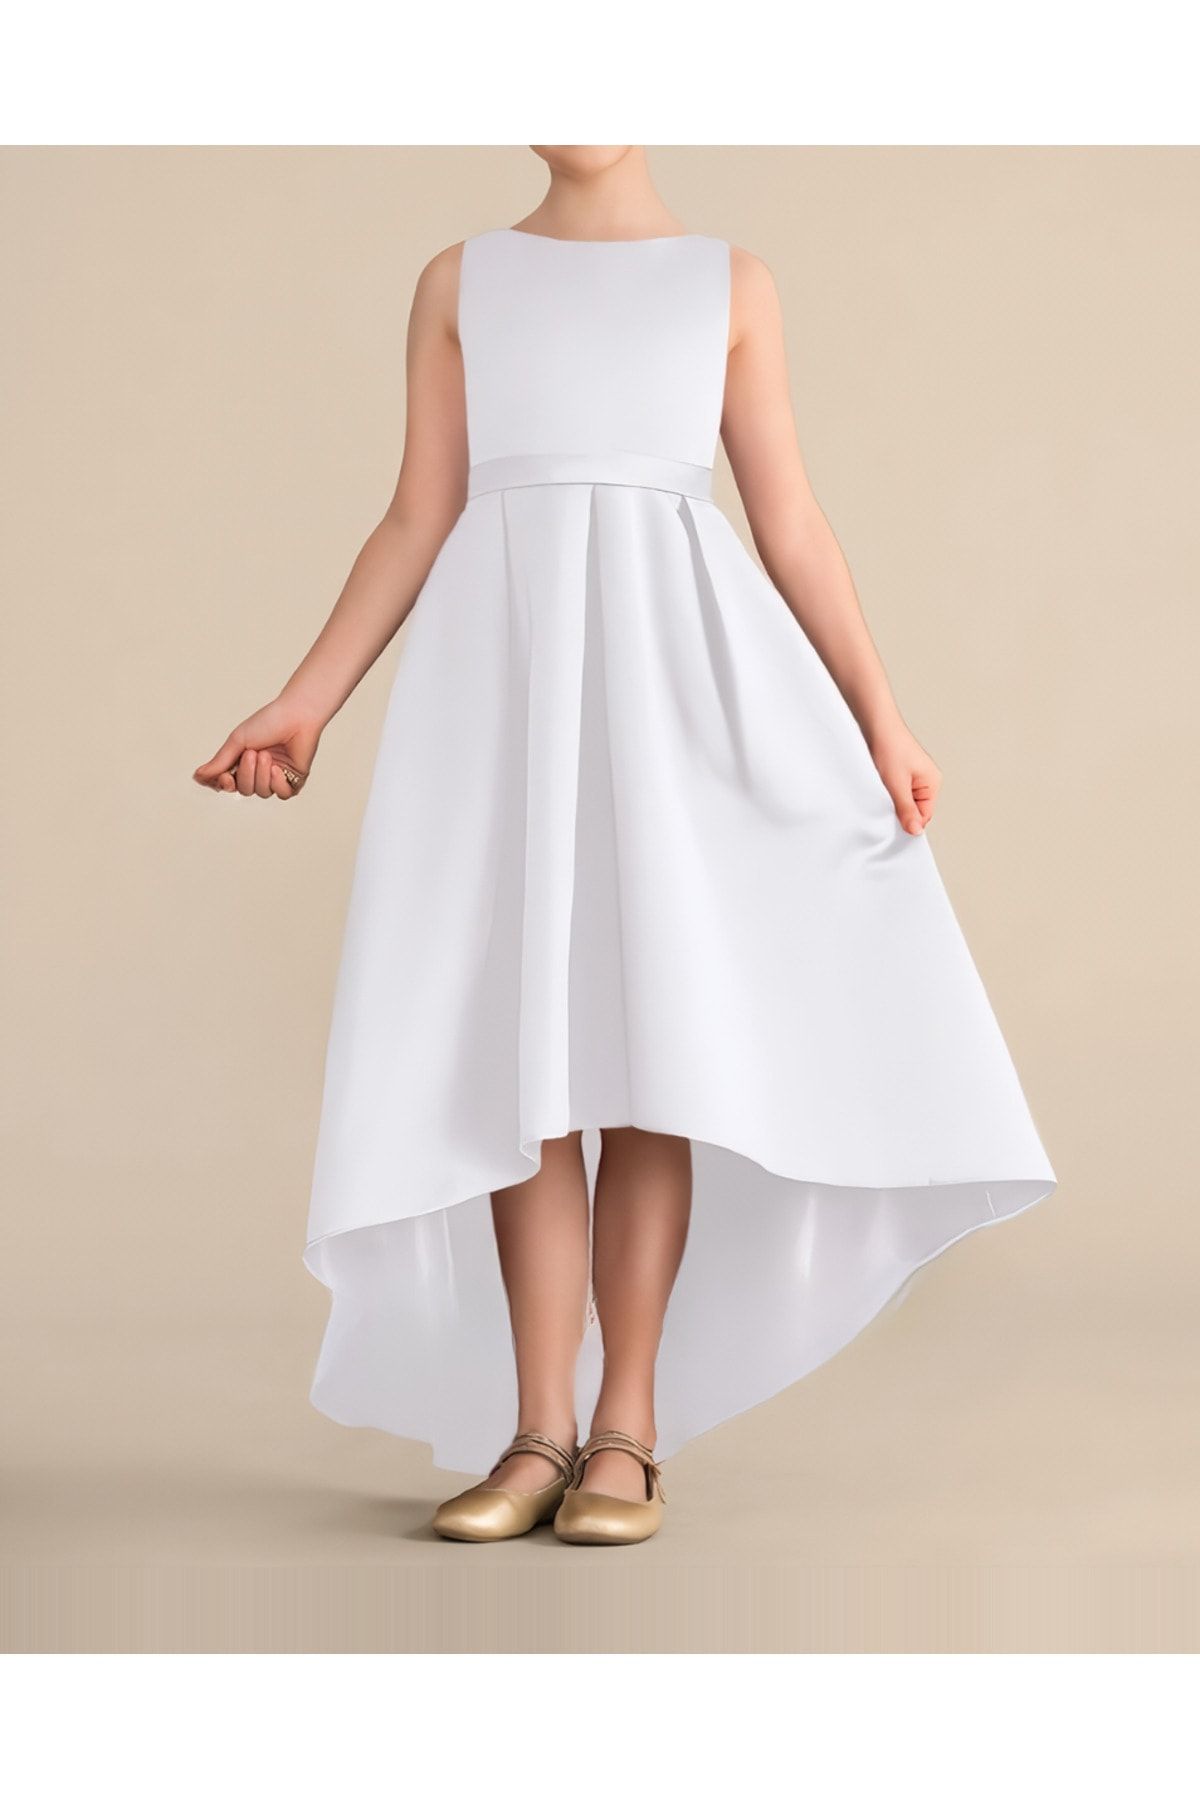 nsmkidslife Kız Çocuk Beyaz Asimetrik Etek Detaylı Sade Şık Saten Mezuniyet Doğum Günü parti Elbise